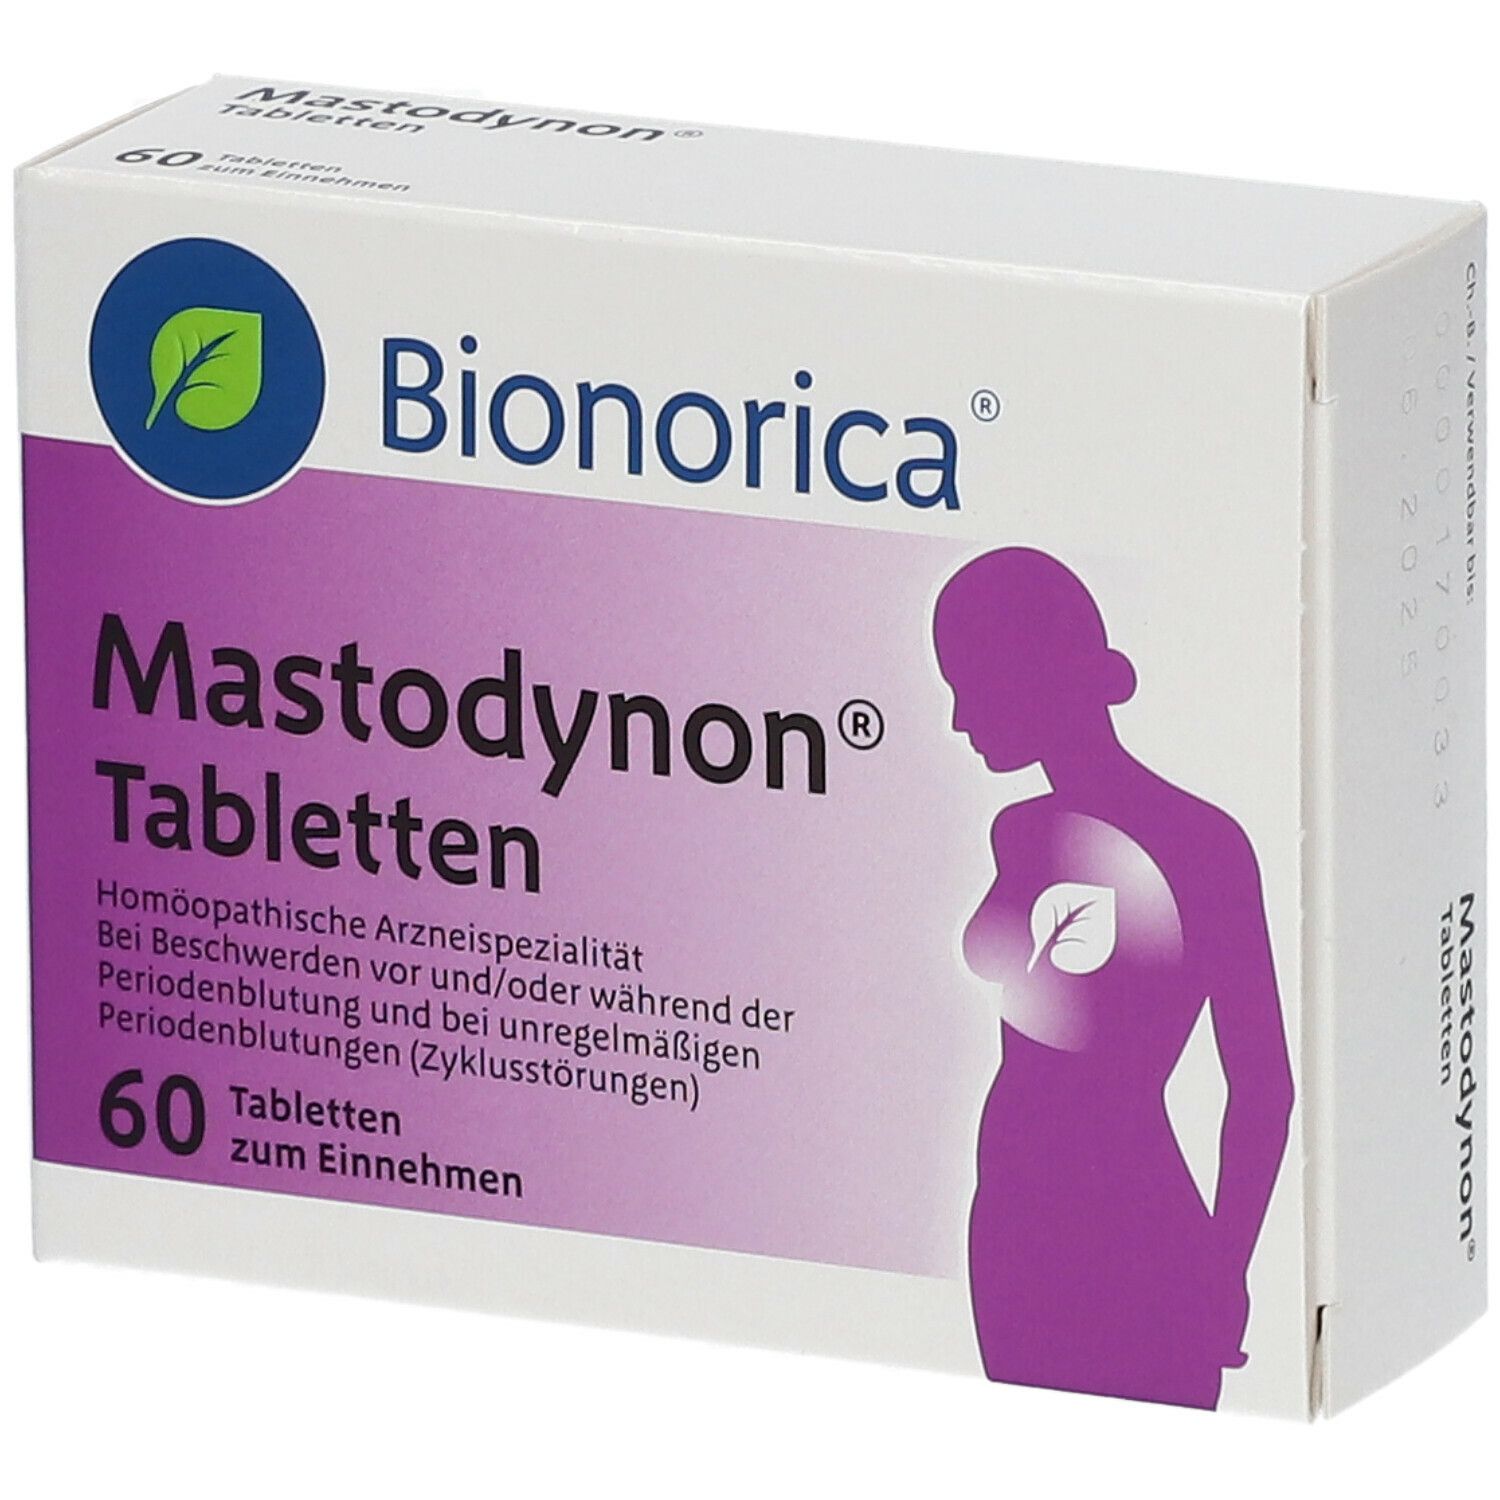 Mastodynon®